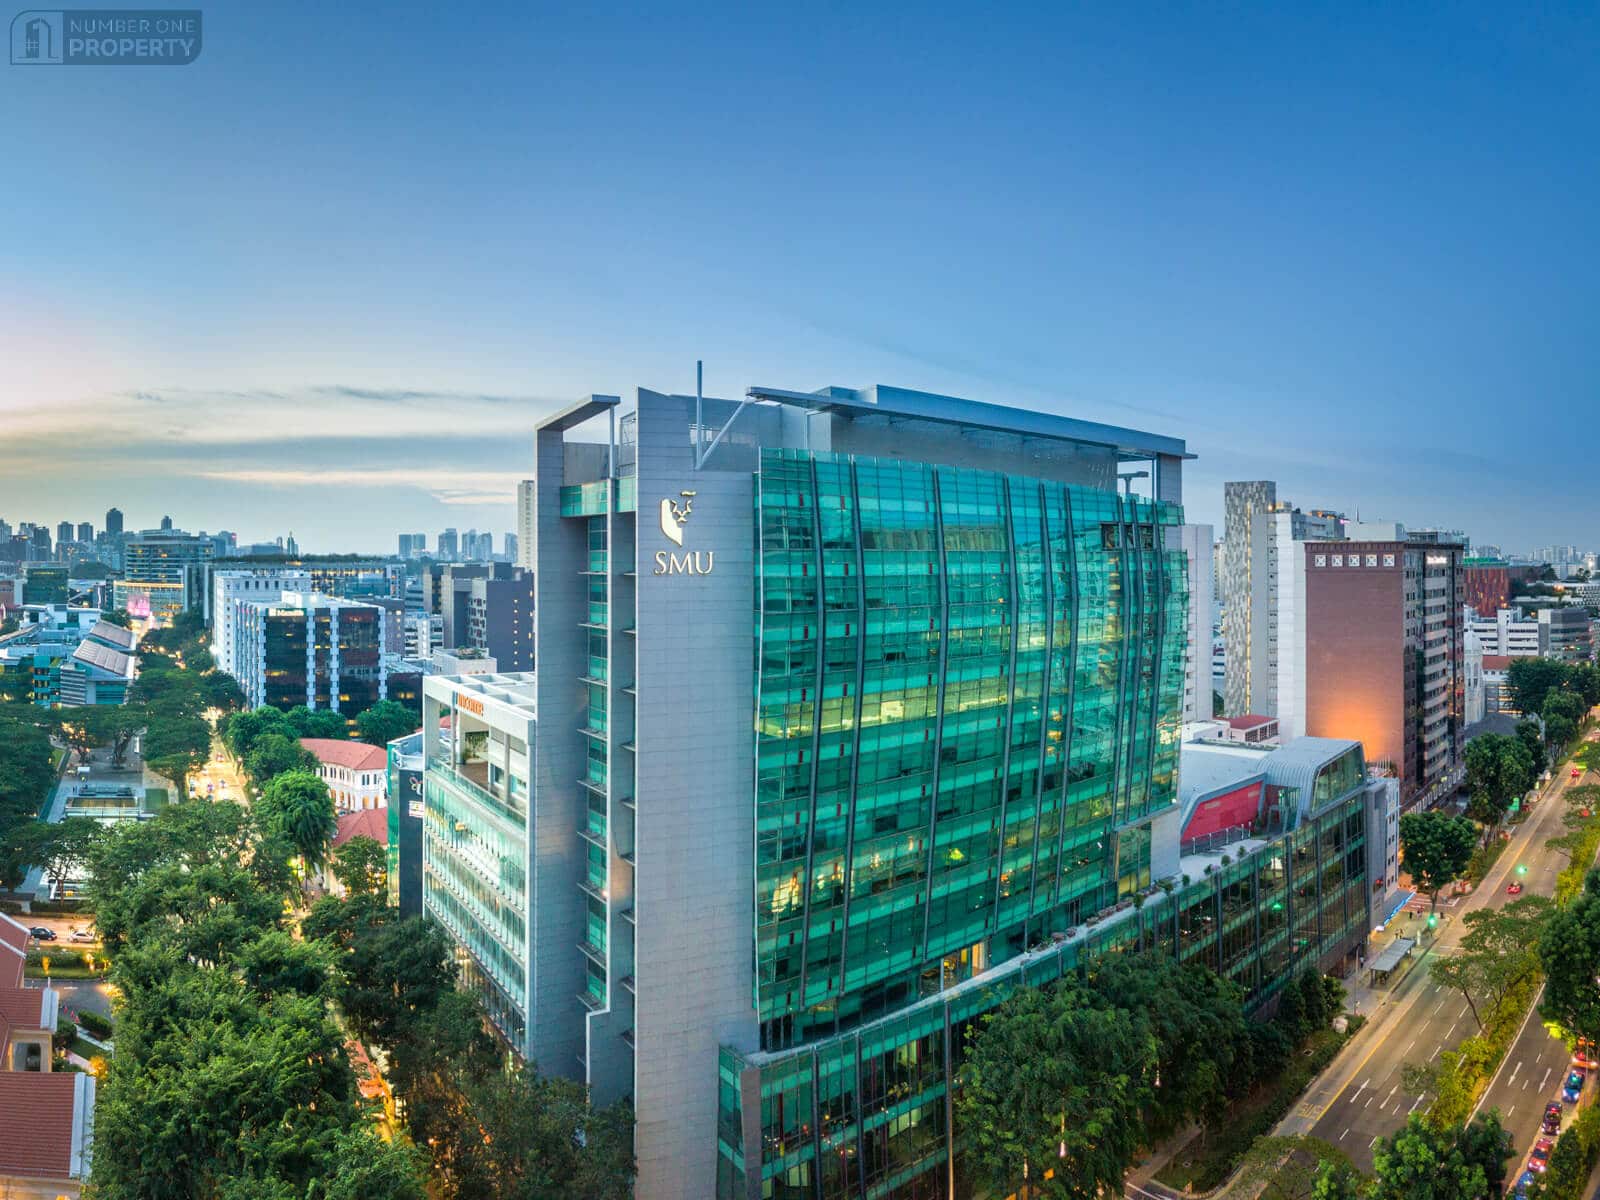 Surrey 21 near Singapore Management University 1